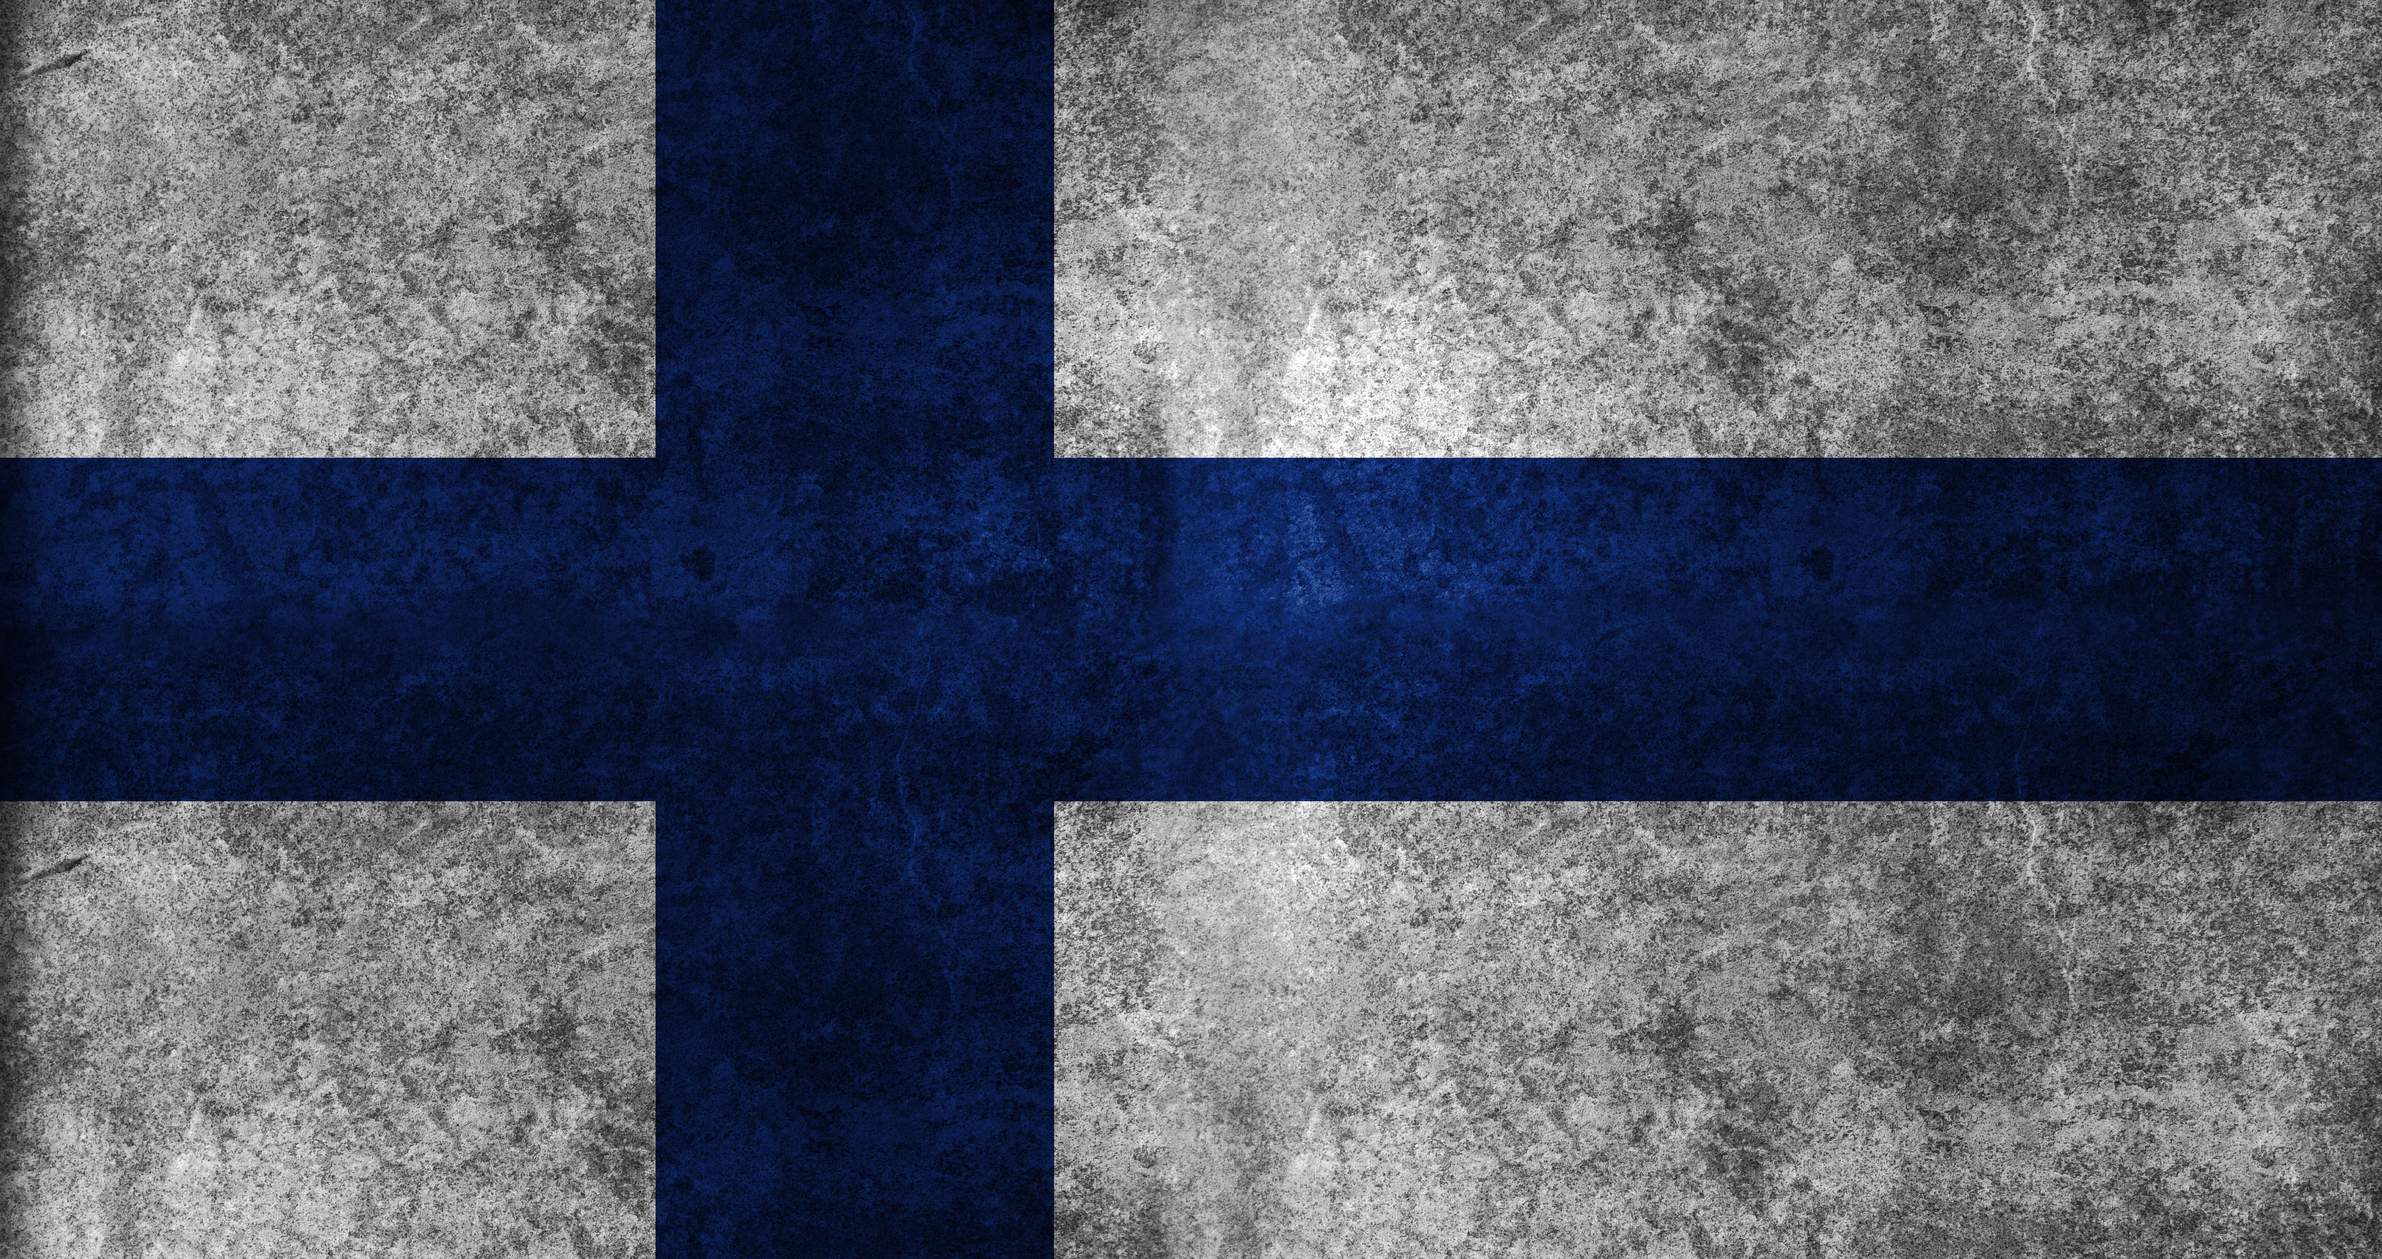 Suomen historian käännepisteitä